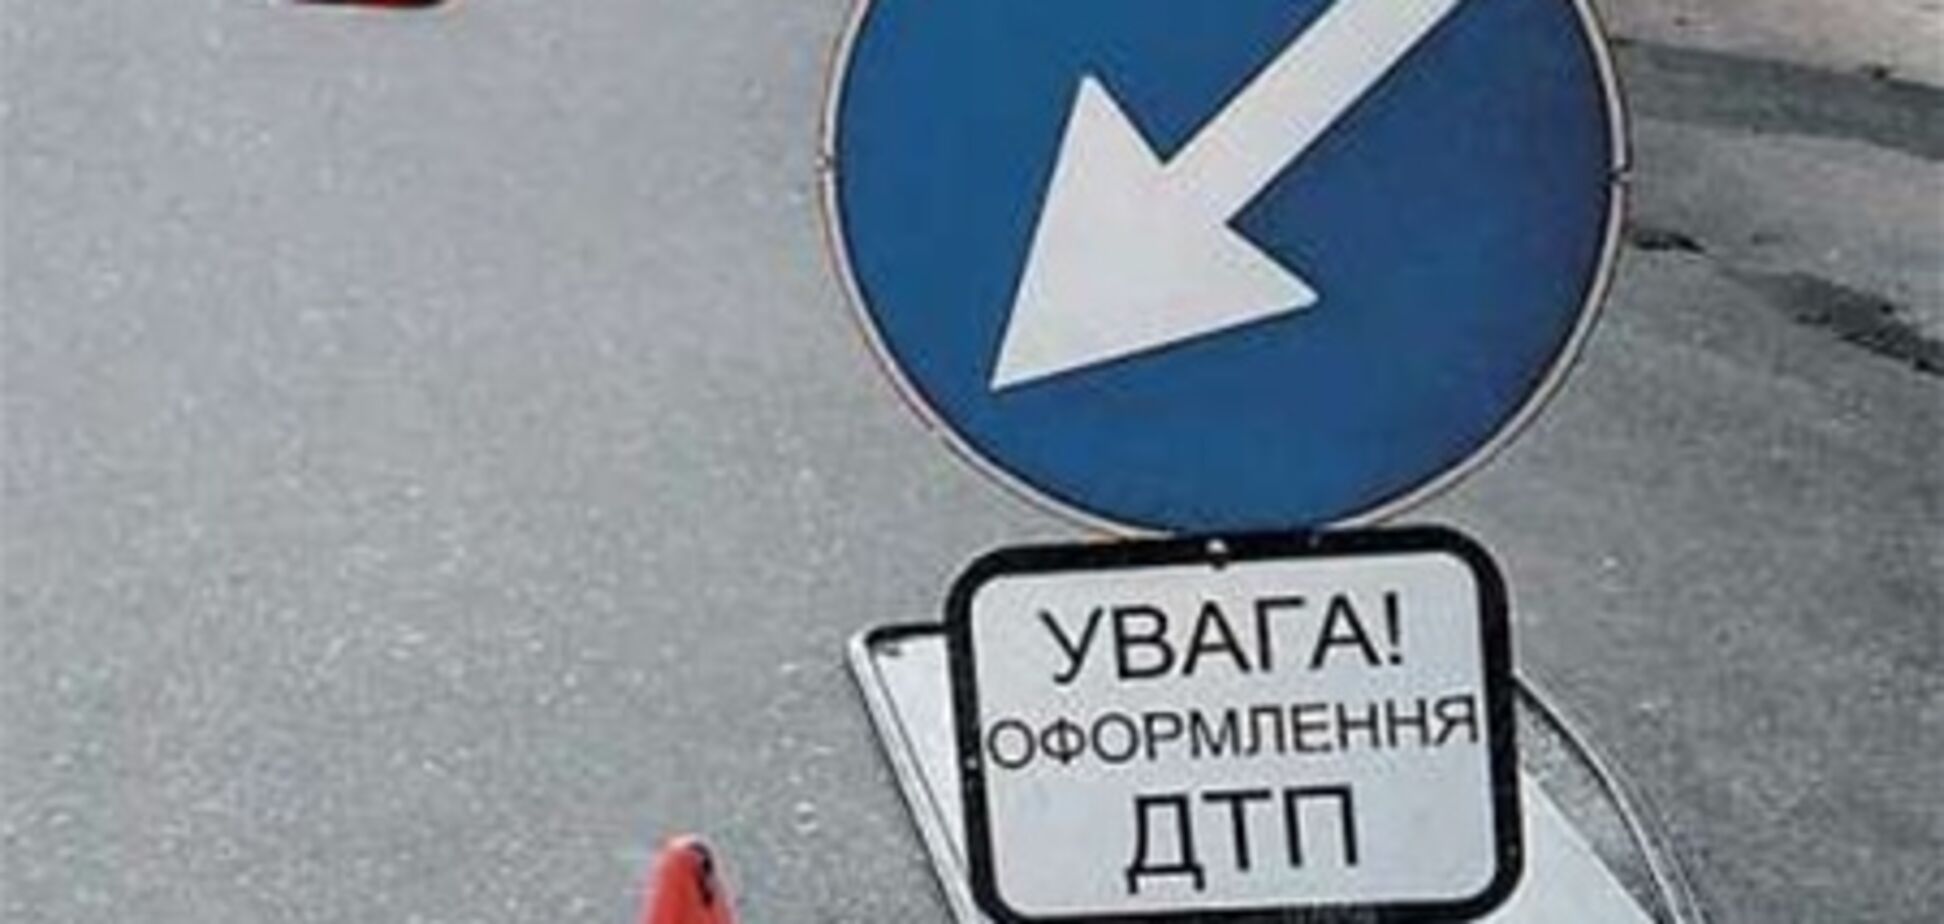 ДТП в Харьковской области: есть пострадавшие